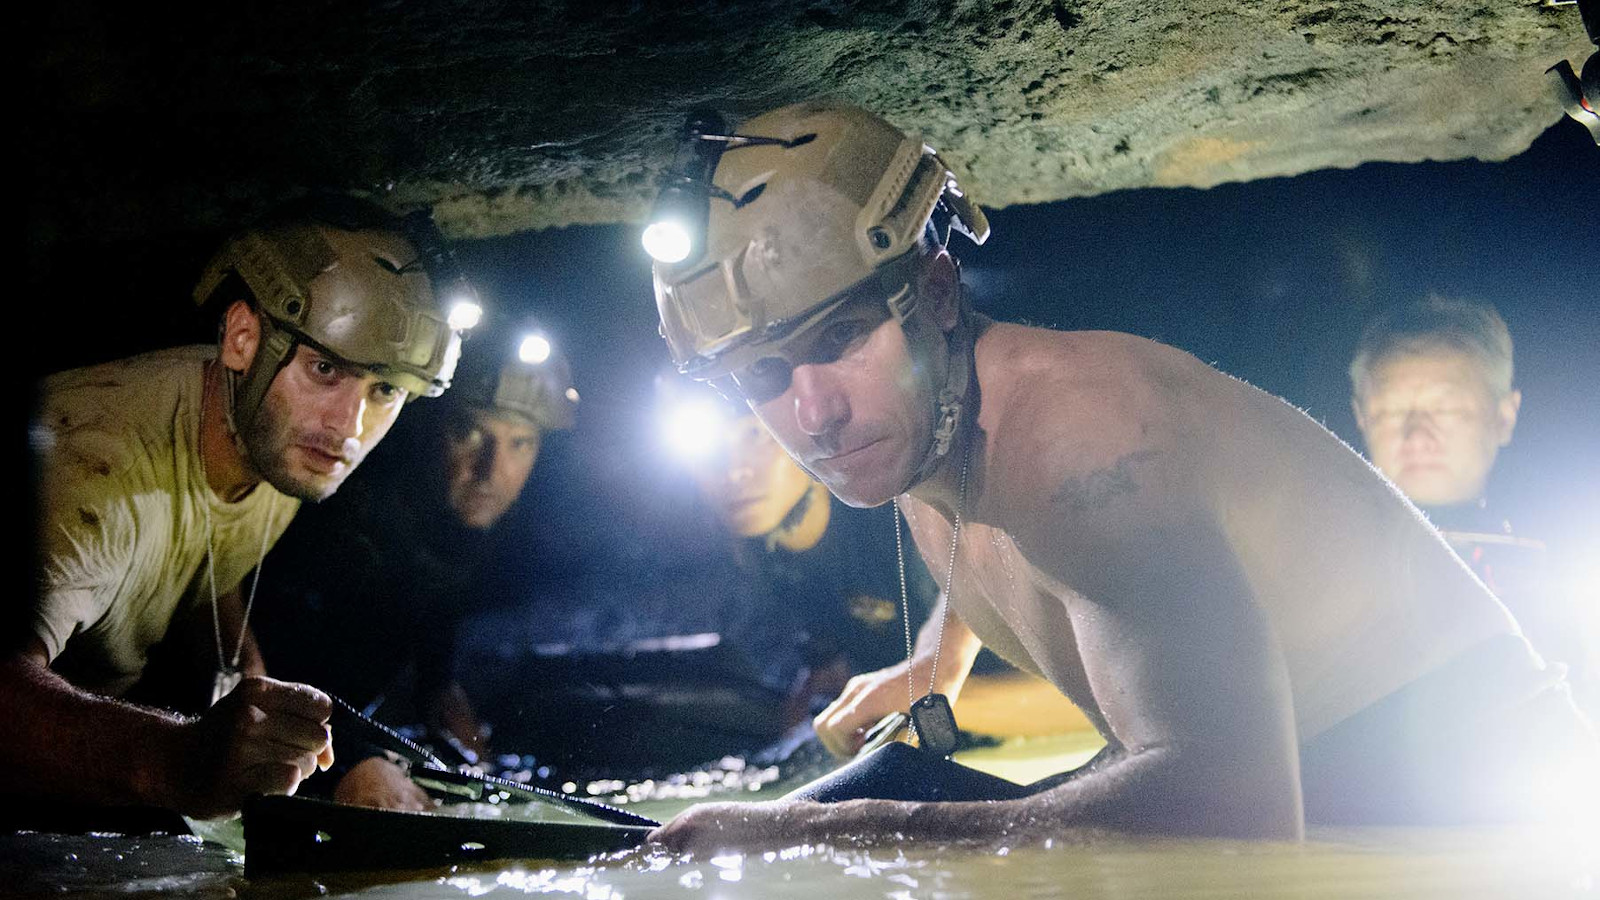 Kuvassa on kaksi pelastajaa luolassa keltaisissa kypärissä.  Vesi on lähes vyötäröä myöten ja luola on matala.  Miehet eivät voi seisoa suorassa.